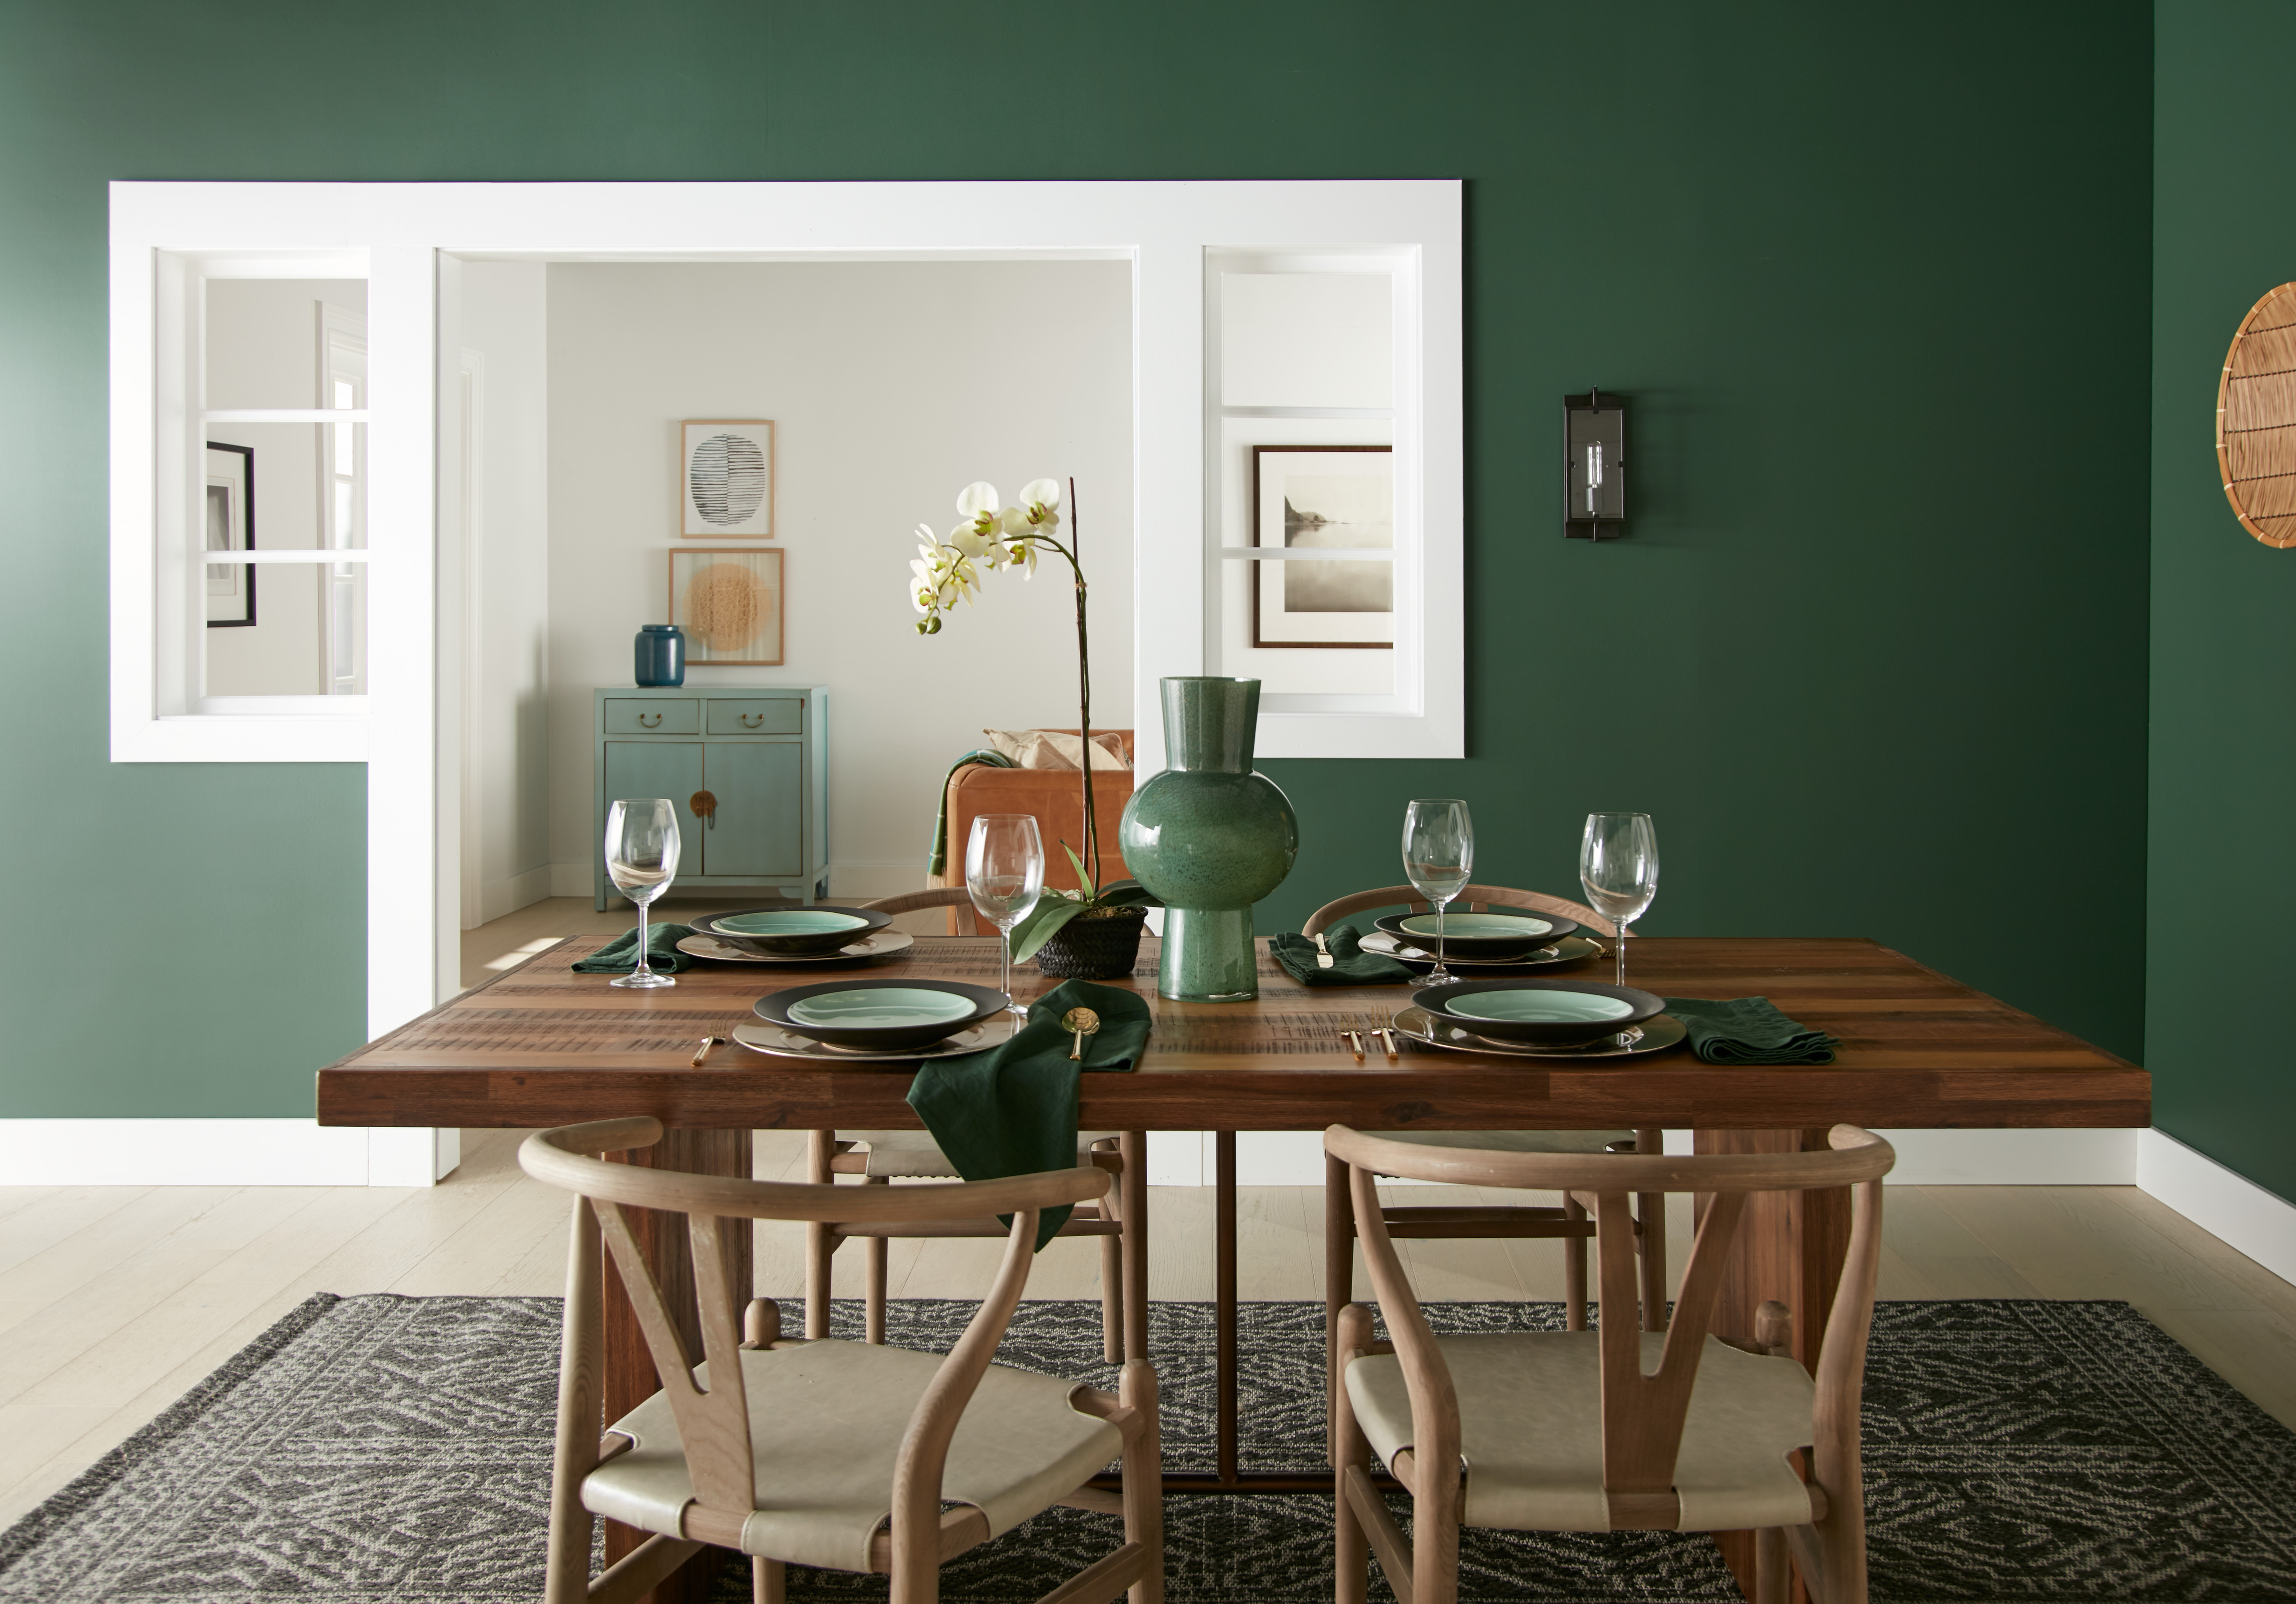 Une salle à manger avec des murs peints dans une couleur de vert profond et une table et chaises en bois clair et foncé au milieu.